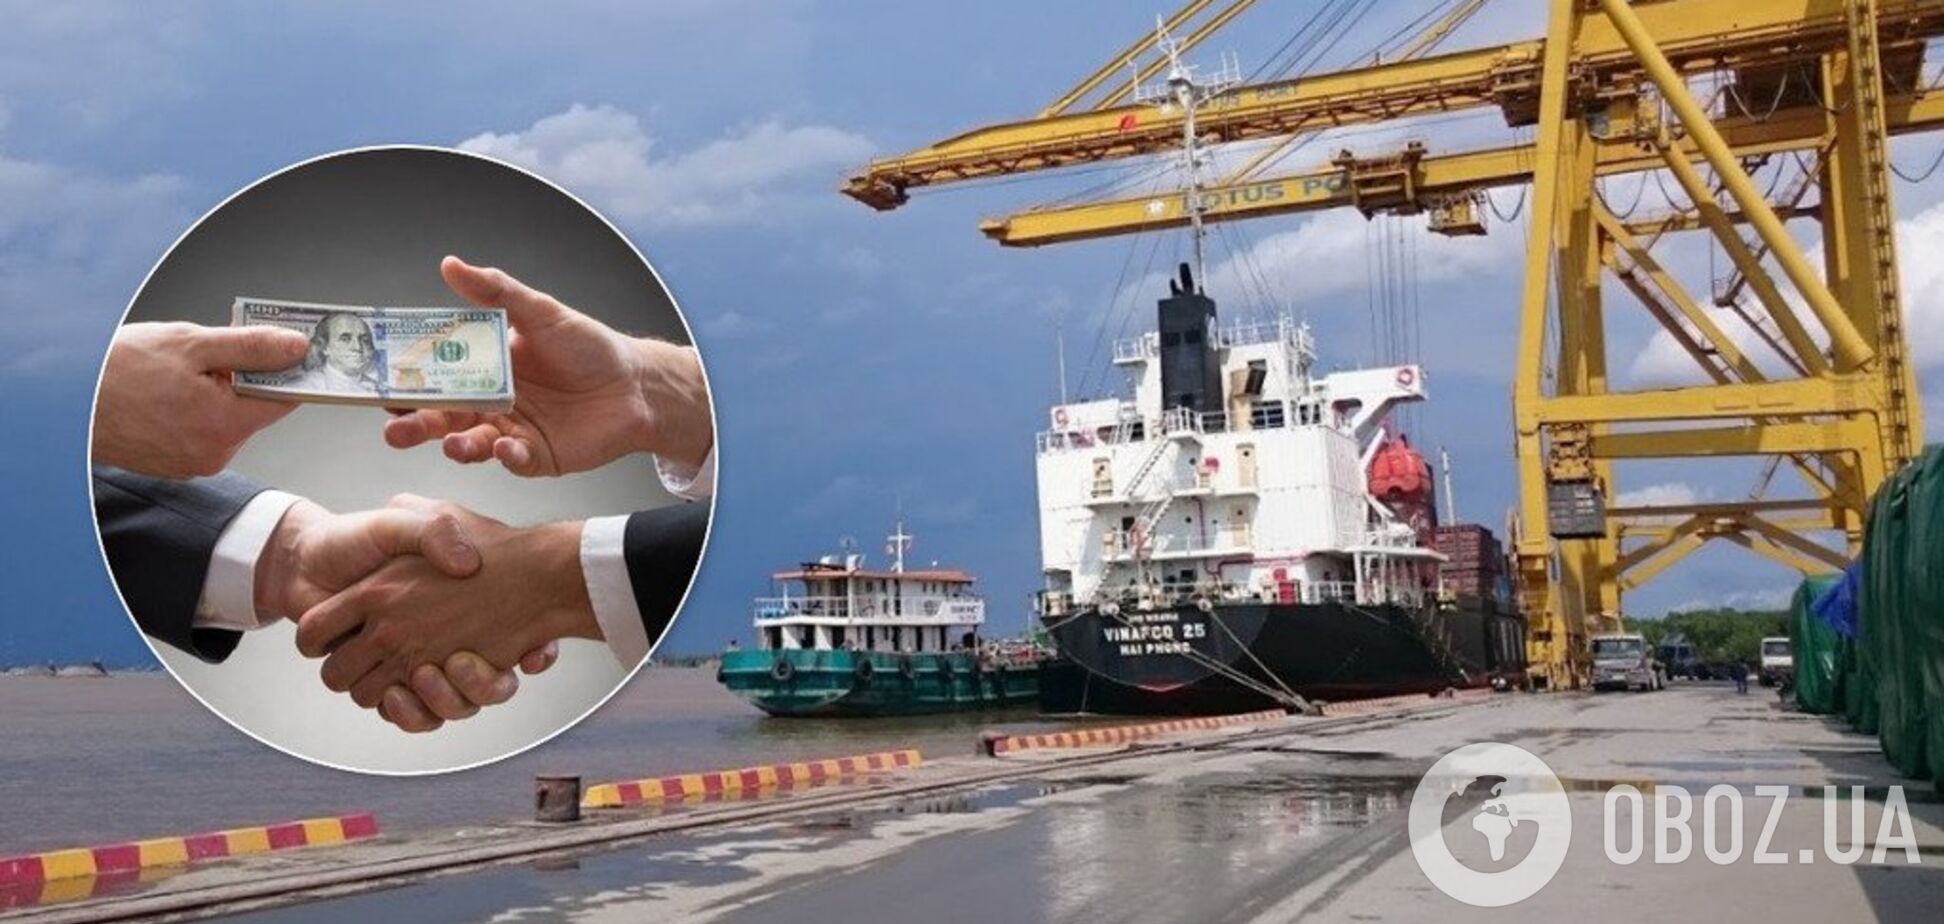 'Выводили в офшор миллионы': Лавренюк рассказал, как чиновники организовали коррупцию в порту 'Лотос'